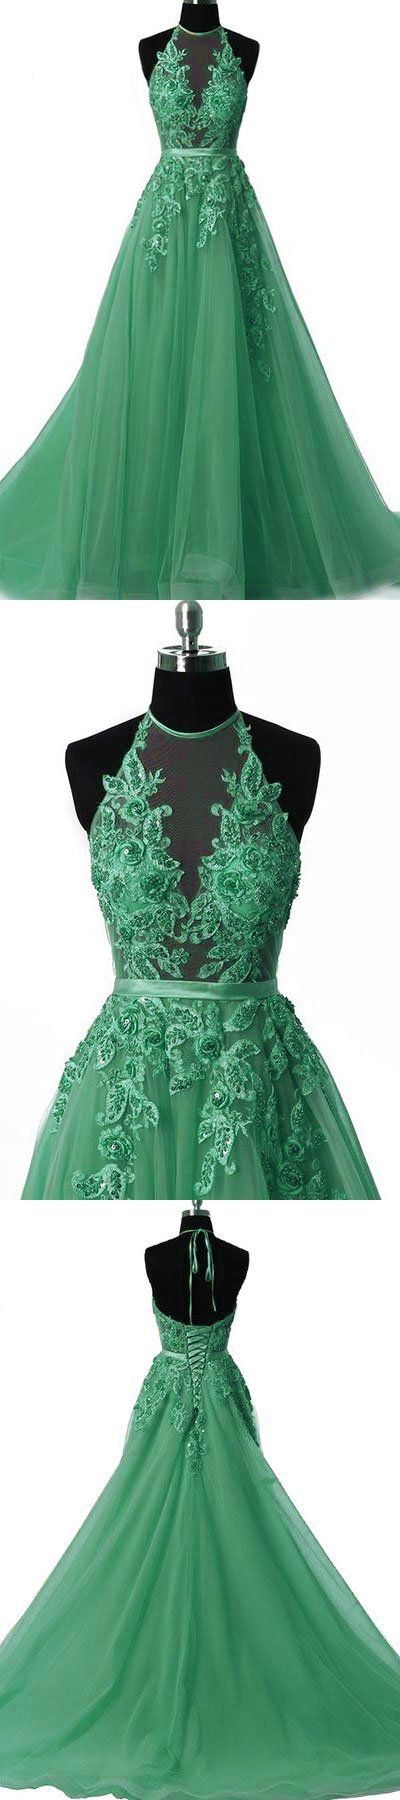 Unique Tulle Lace Applique Green Long Prom Dress, Green Tulle Evening Dressunique Tulle Lace Applique Green Long Prom Dress, Green Tulle Evening